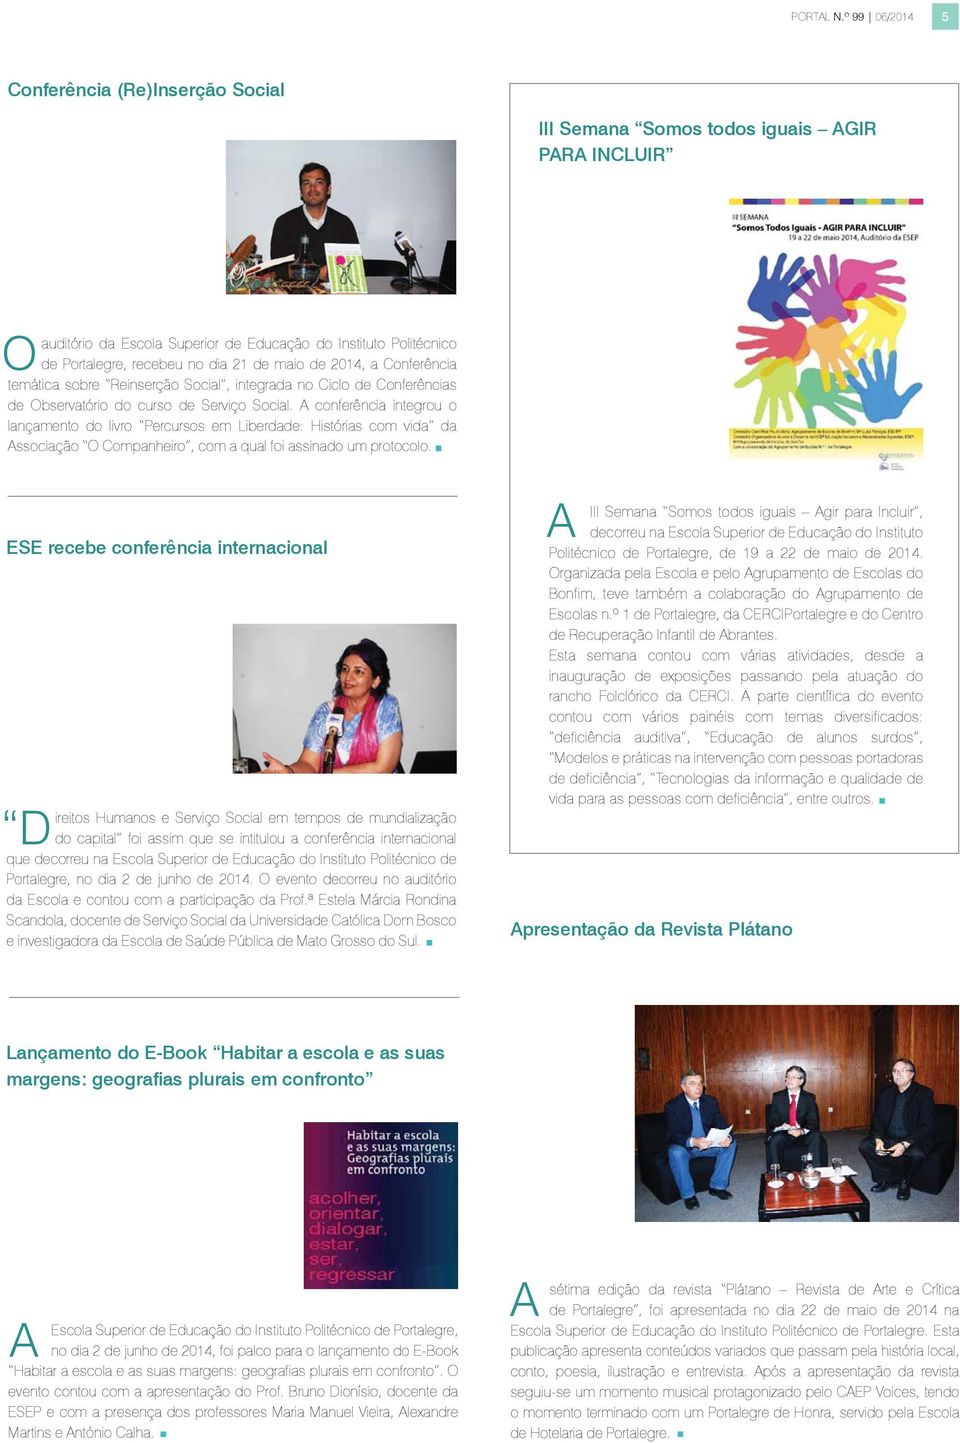 de 2014, a Conferência temática sobre Reinserção Social, integrada no Ciclo de Conferências de bservatório do curso de Serviço Social.